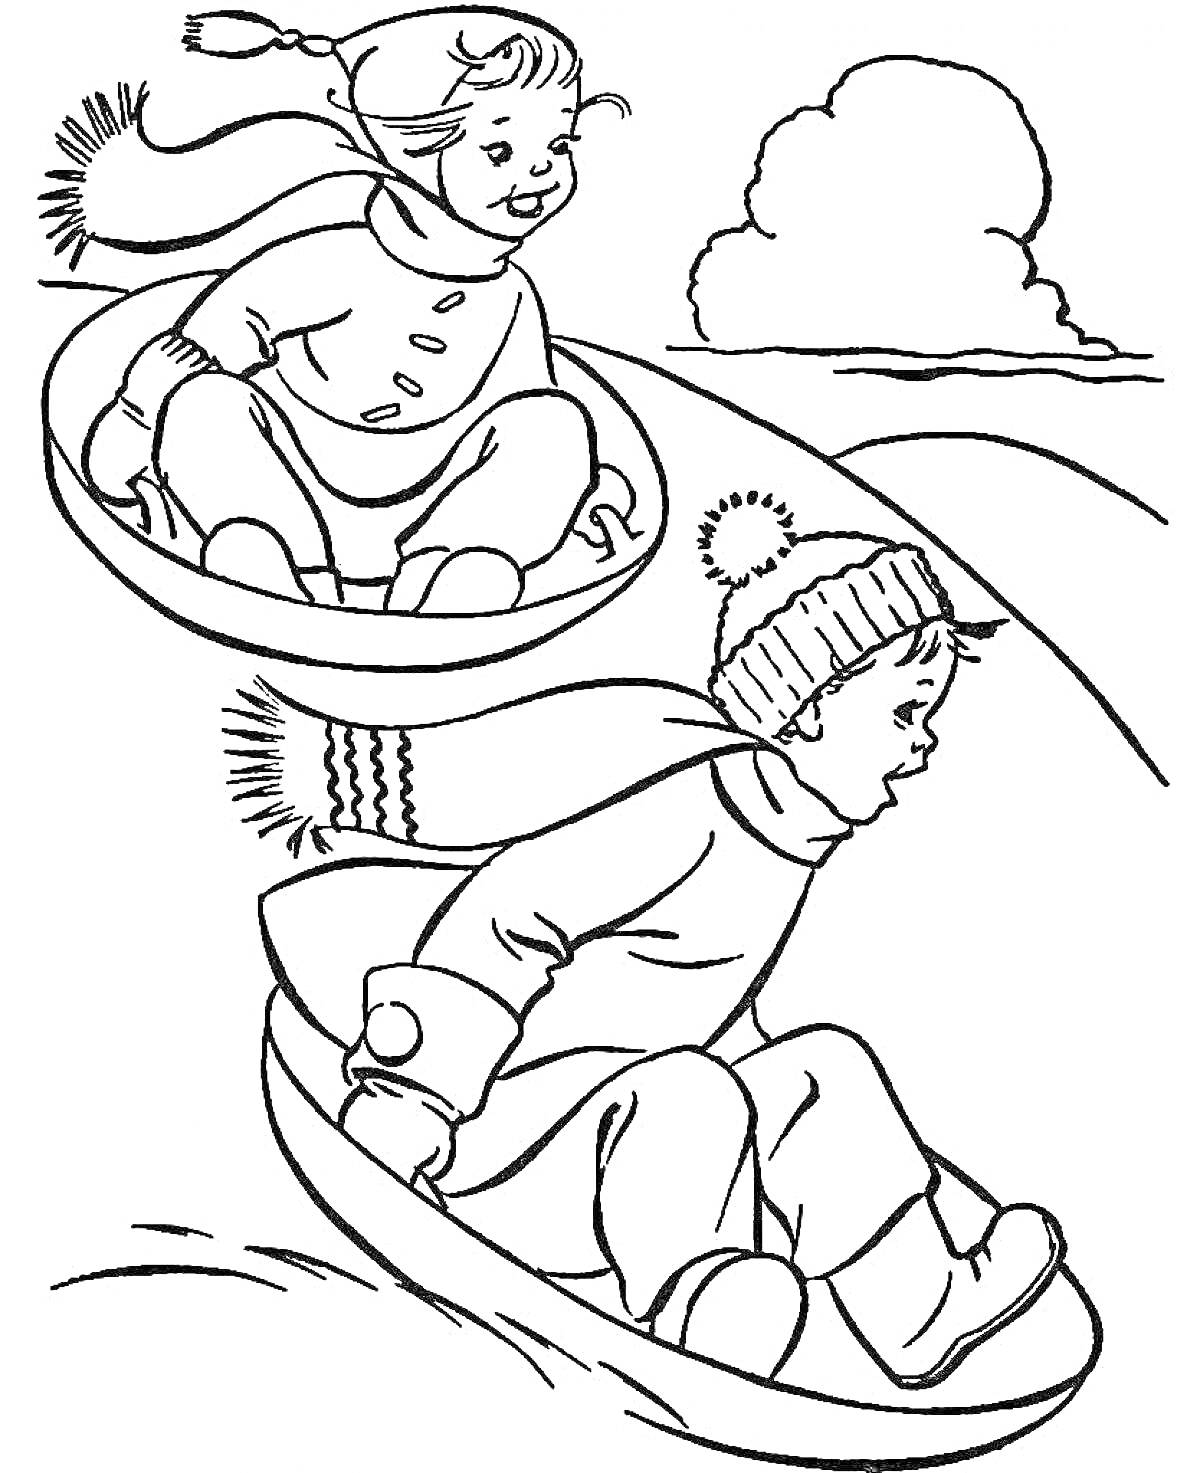 Раскраска Двое детей катаются на санках с горки в снежный сугроб